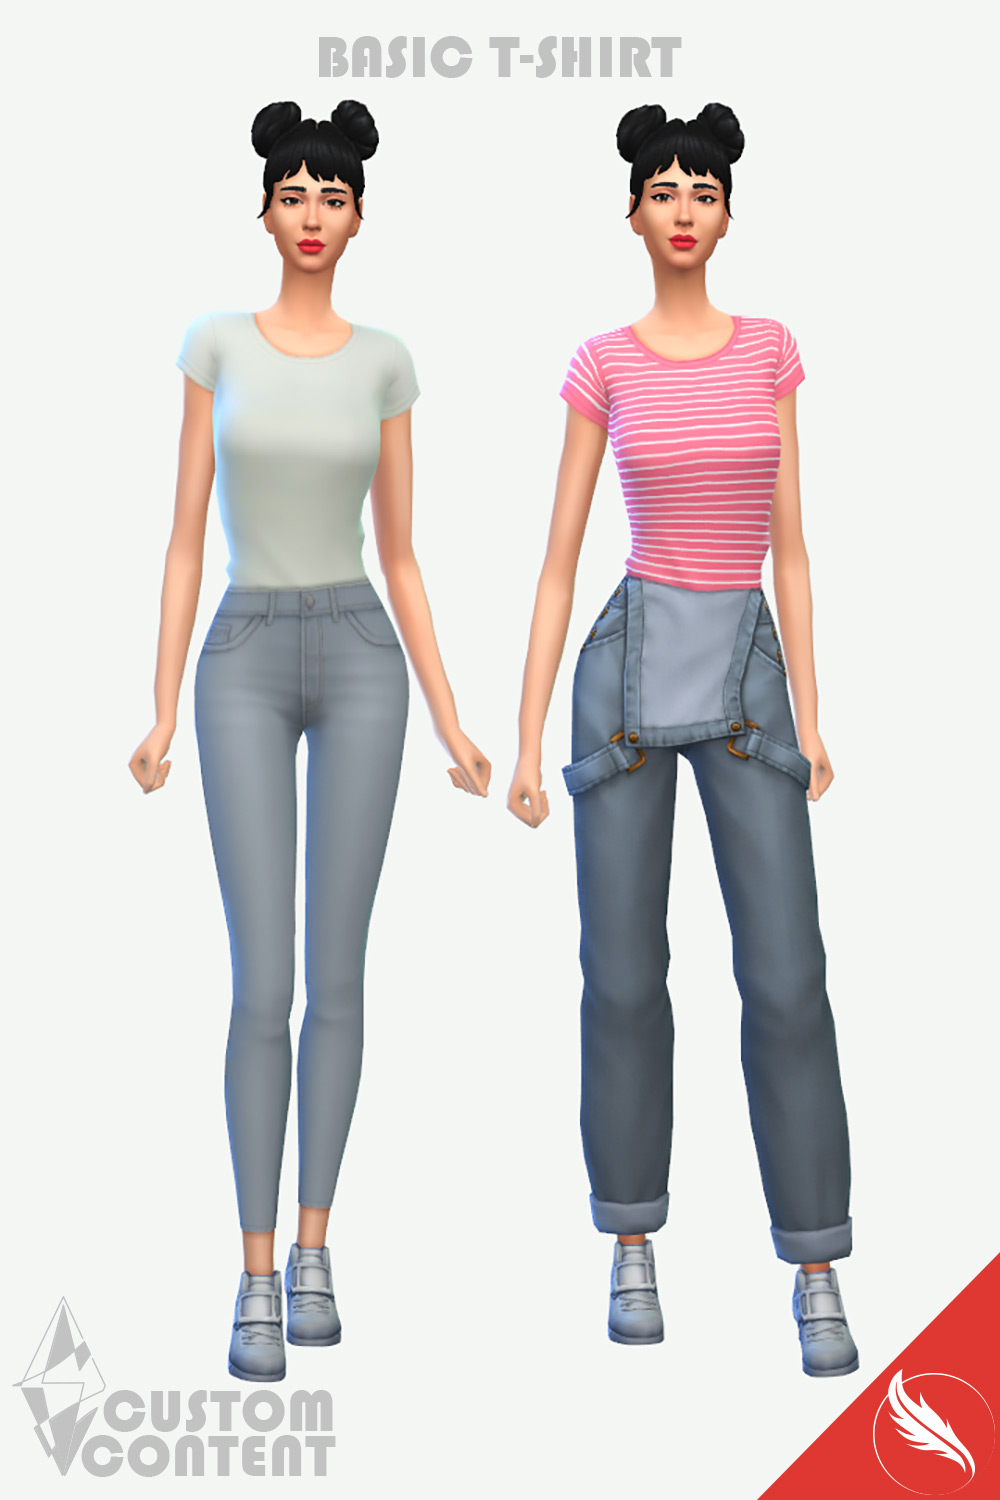 The Sims 4 Basic T-Shirt